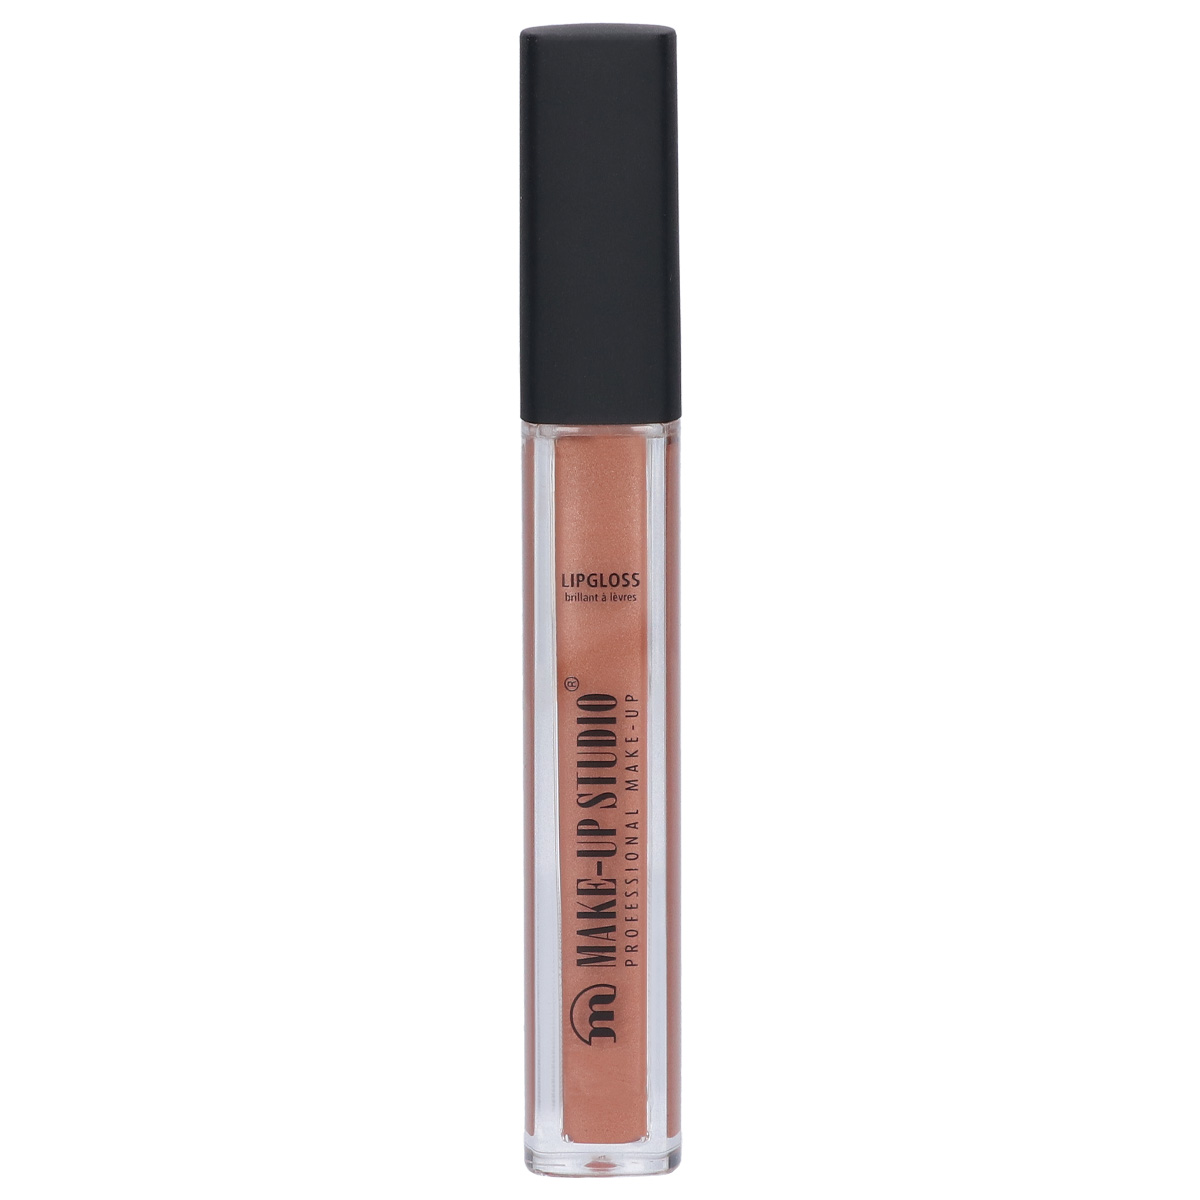 Make-up Studio Paint Gloss Lipgloss - Velvet Nude